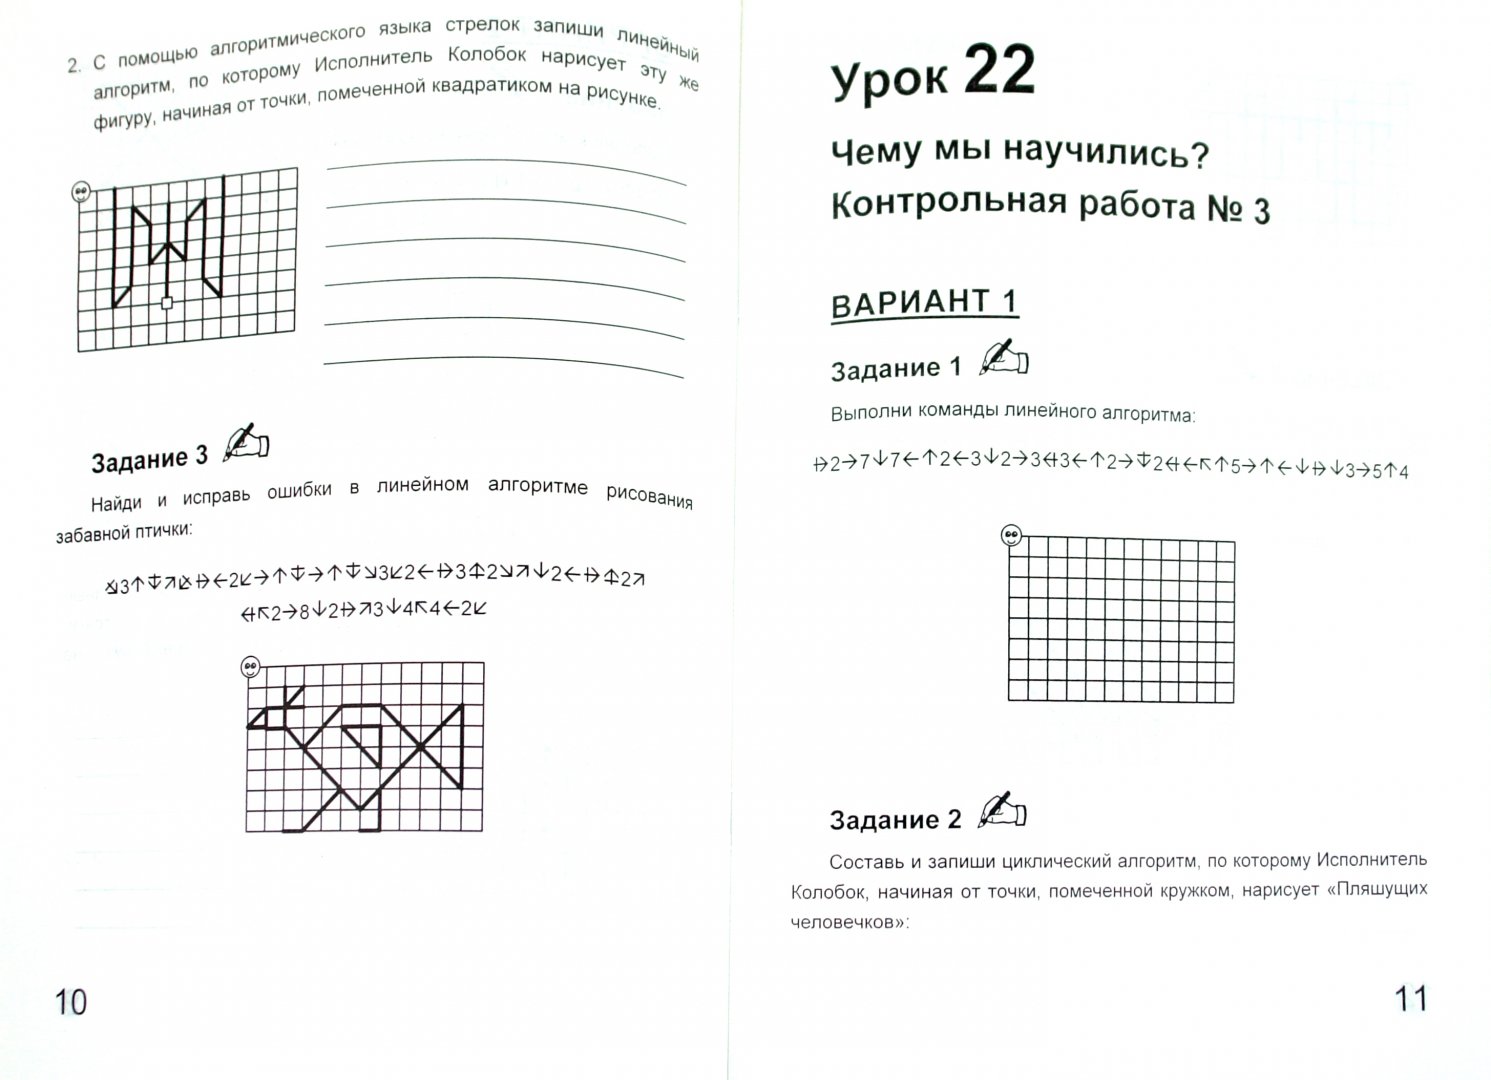 Иллюстрация 1 из 7 для Учебник-тетрадь по информатике для 4 класса (+ вкладыш) - Тур, Бокучава | Лабиринт - книги. Источник: Лабиринт